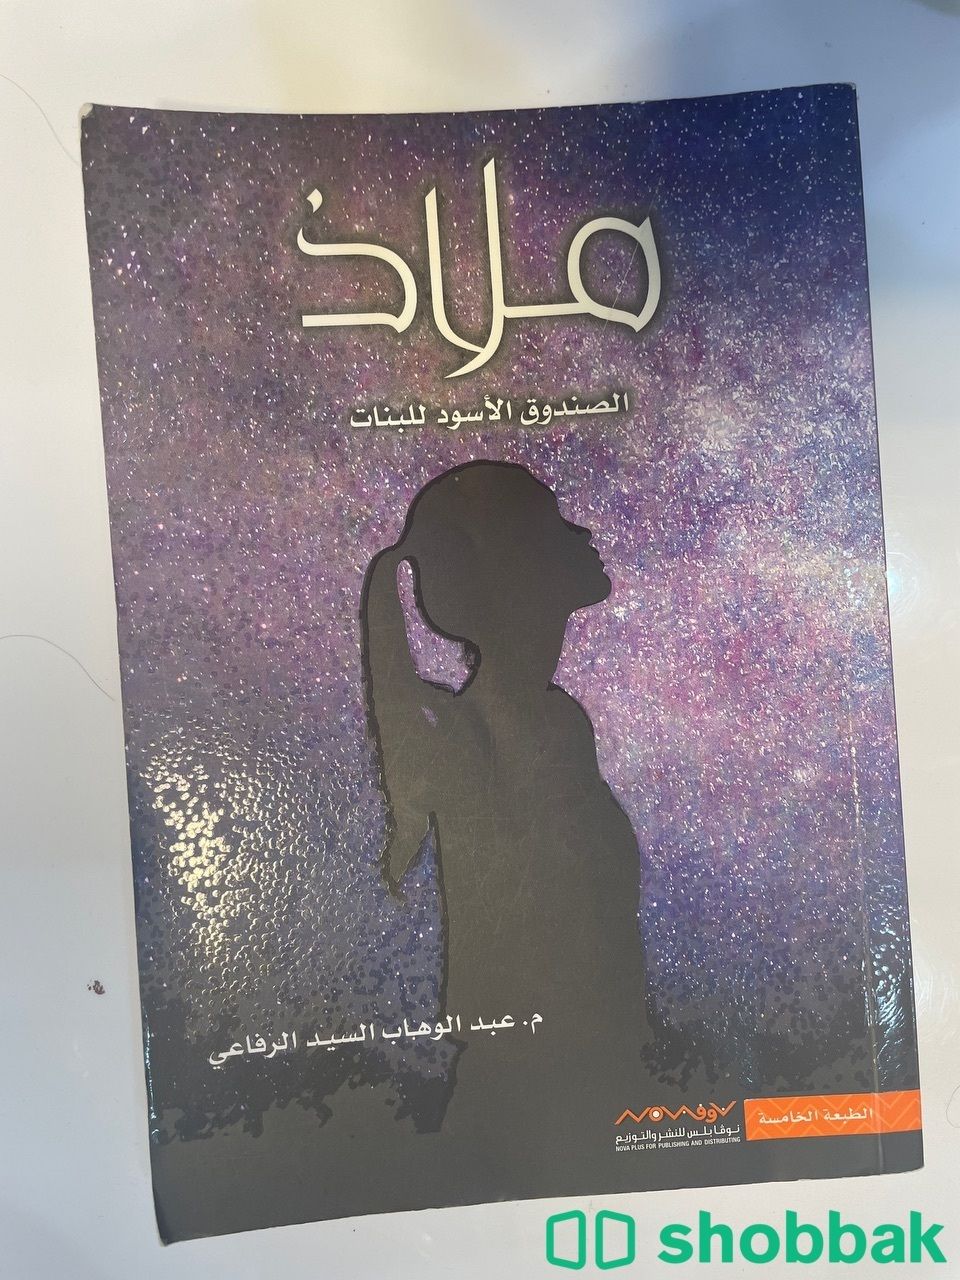 كتاب " ملاذ " للكاتب : عبدالوهاب السيد الرفاعي. Shobbak Saudi Arabia